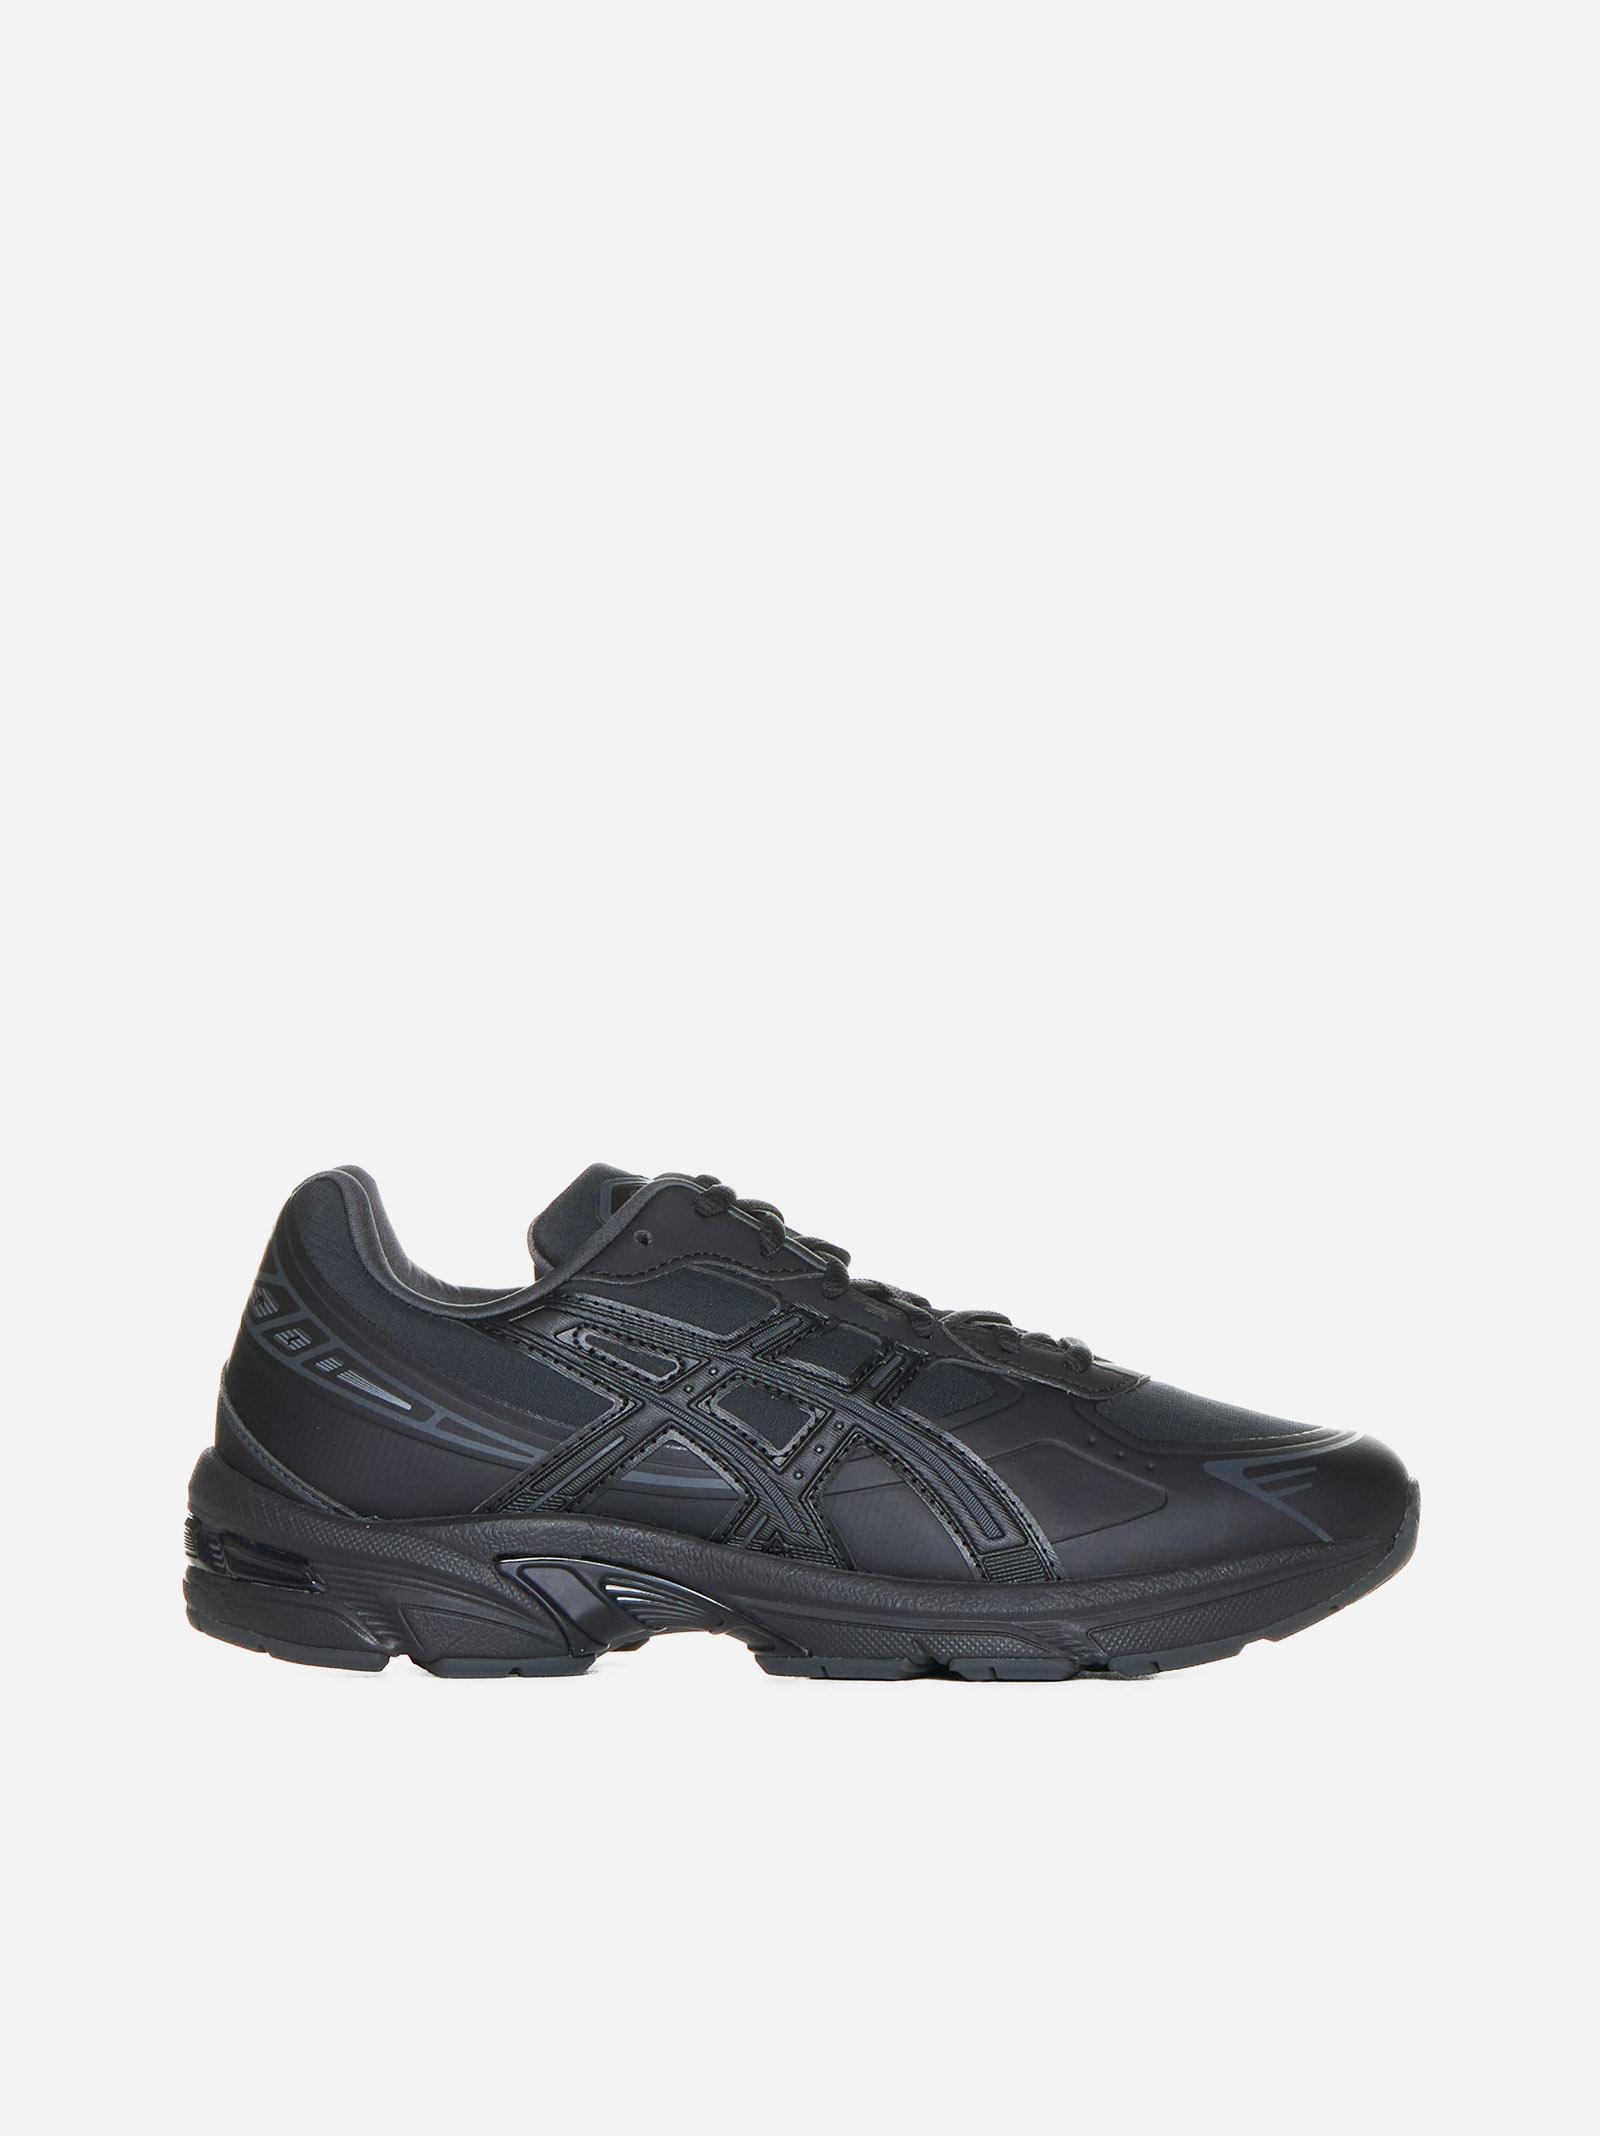 Asics Unisex Gel-1130 Ns Sneakers In Black